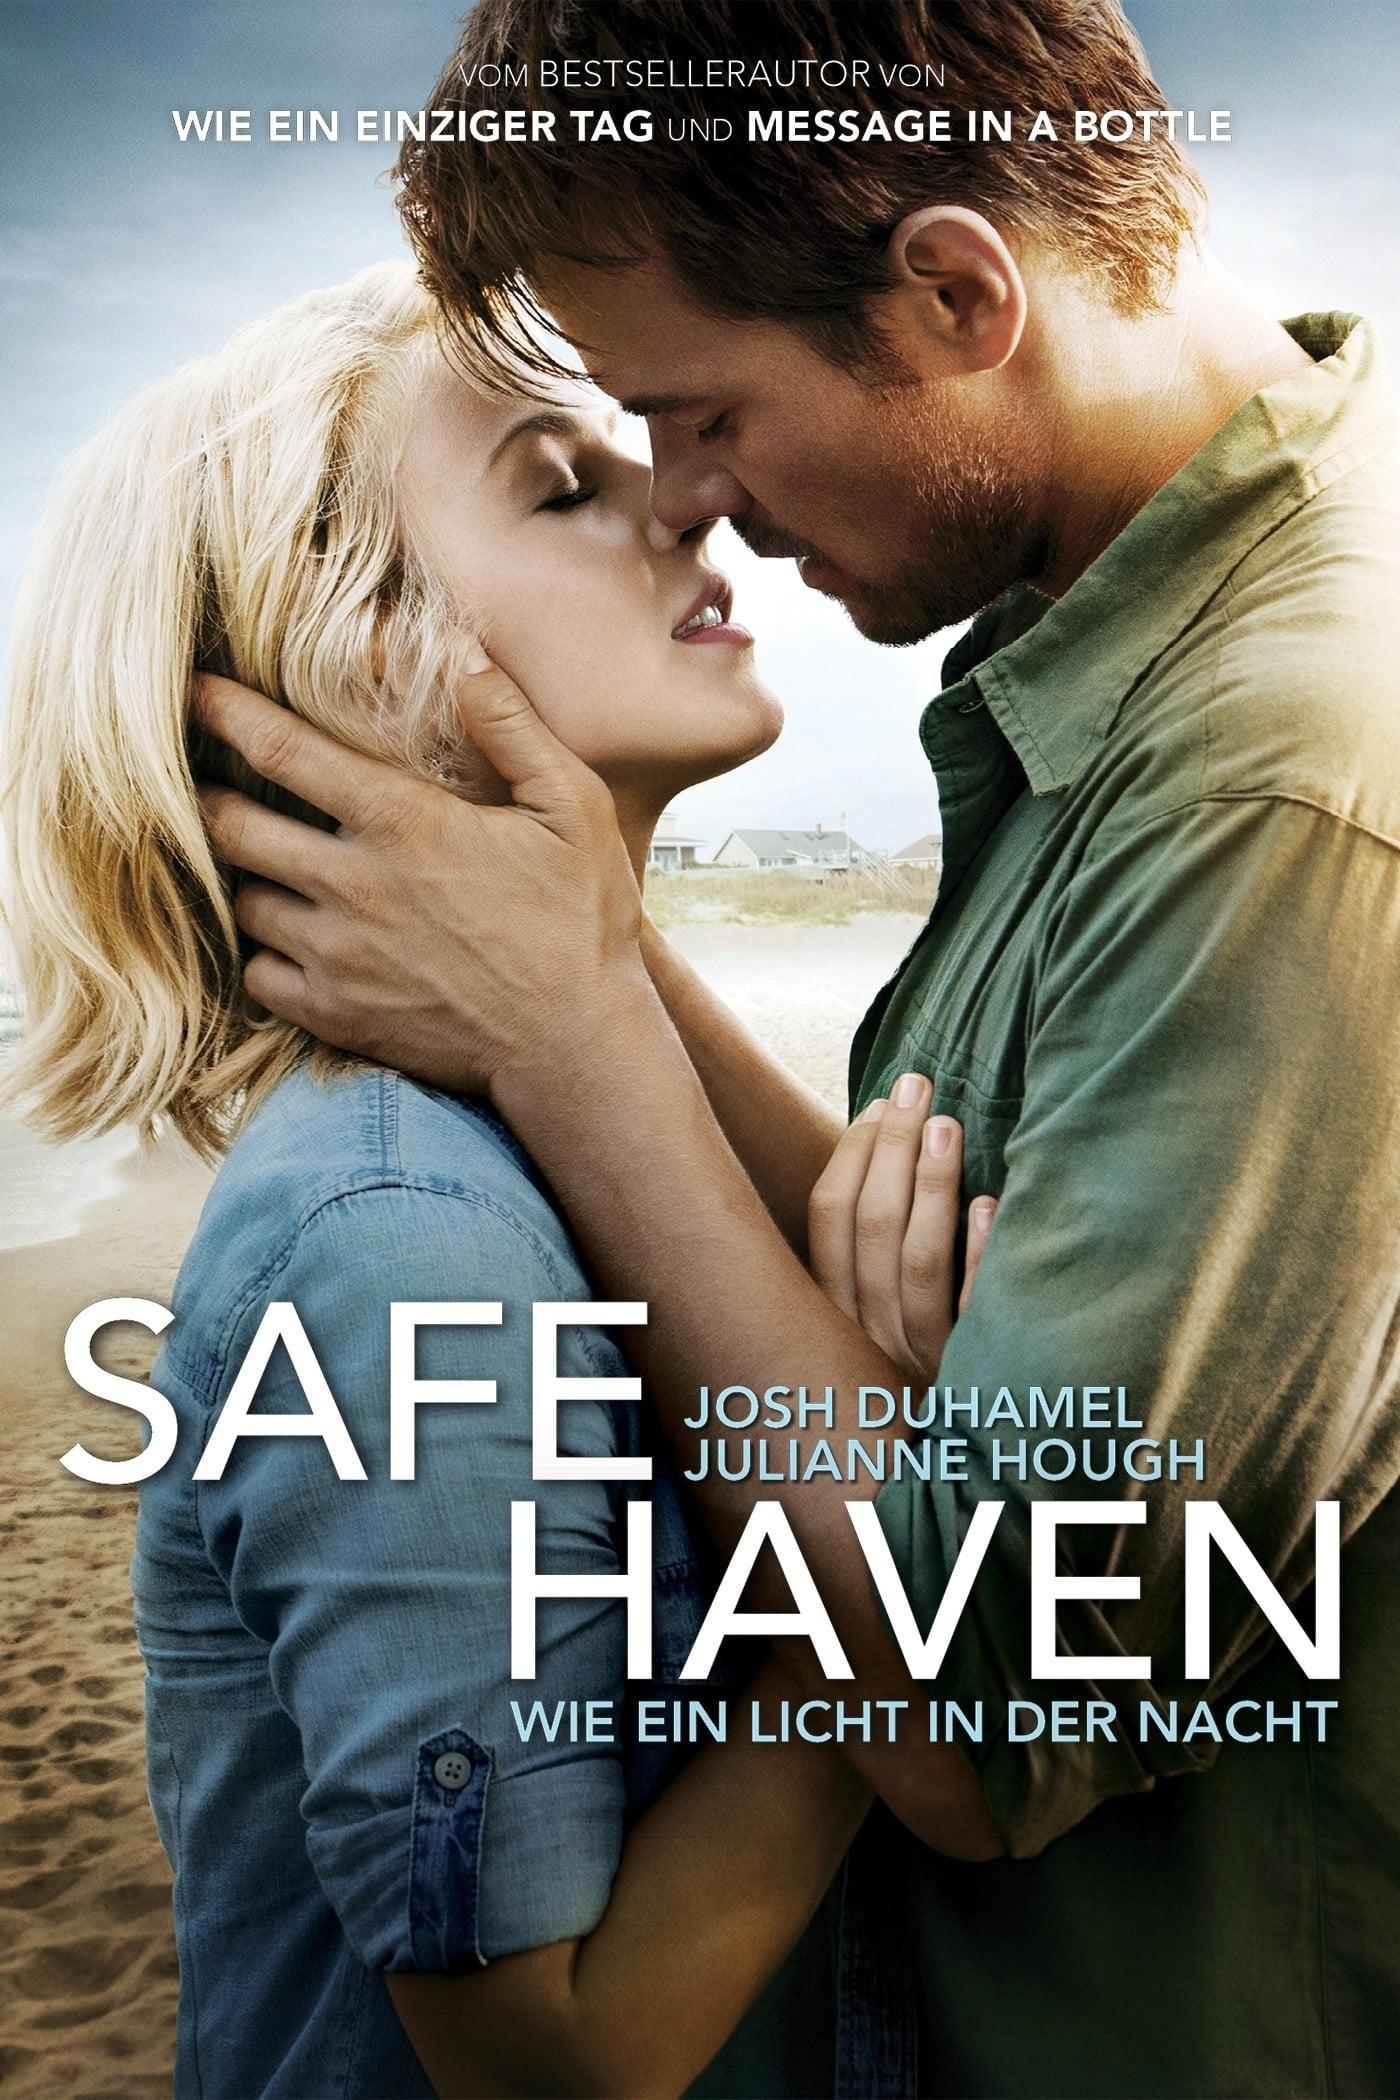 Safe Haven - Wie ein Licht in der Nacht poster